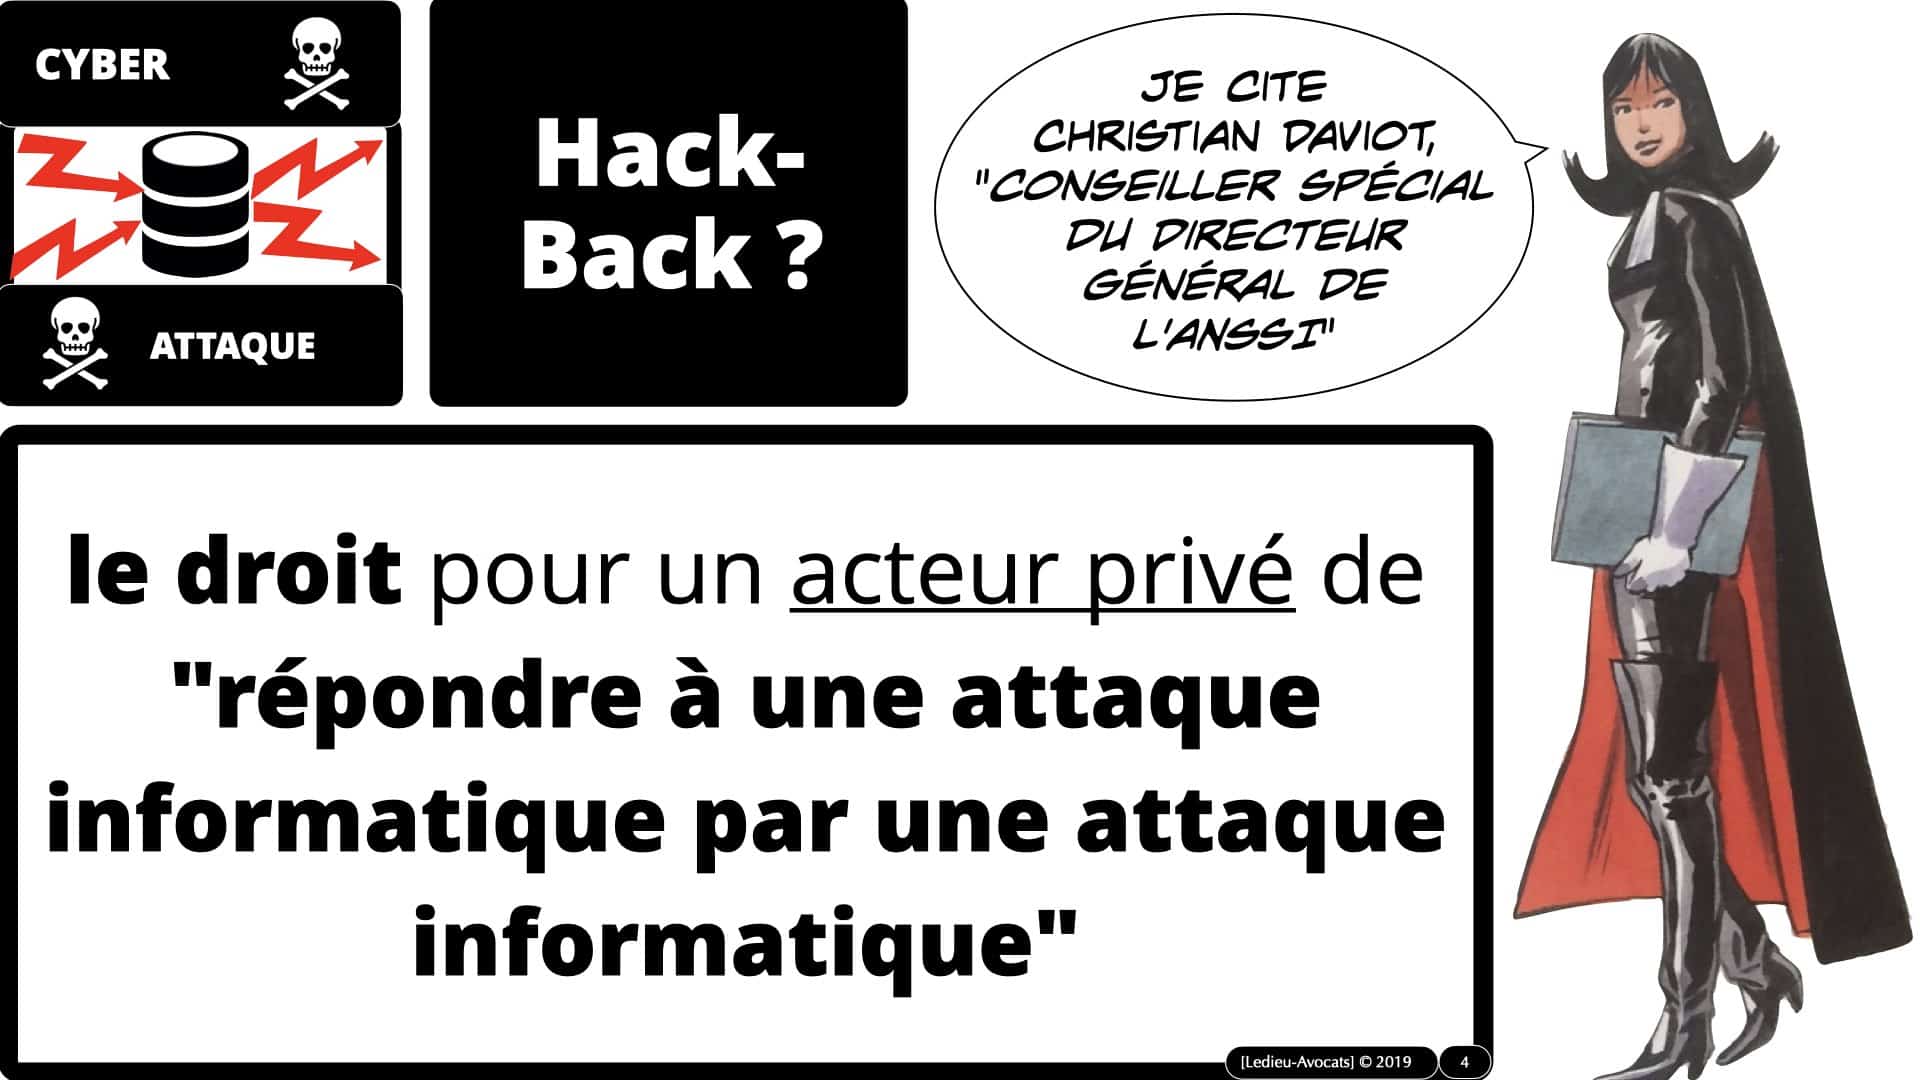 cyber attaque et hack-back : quel droit à riposte numérique ?